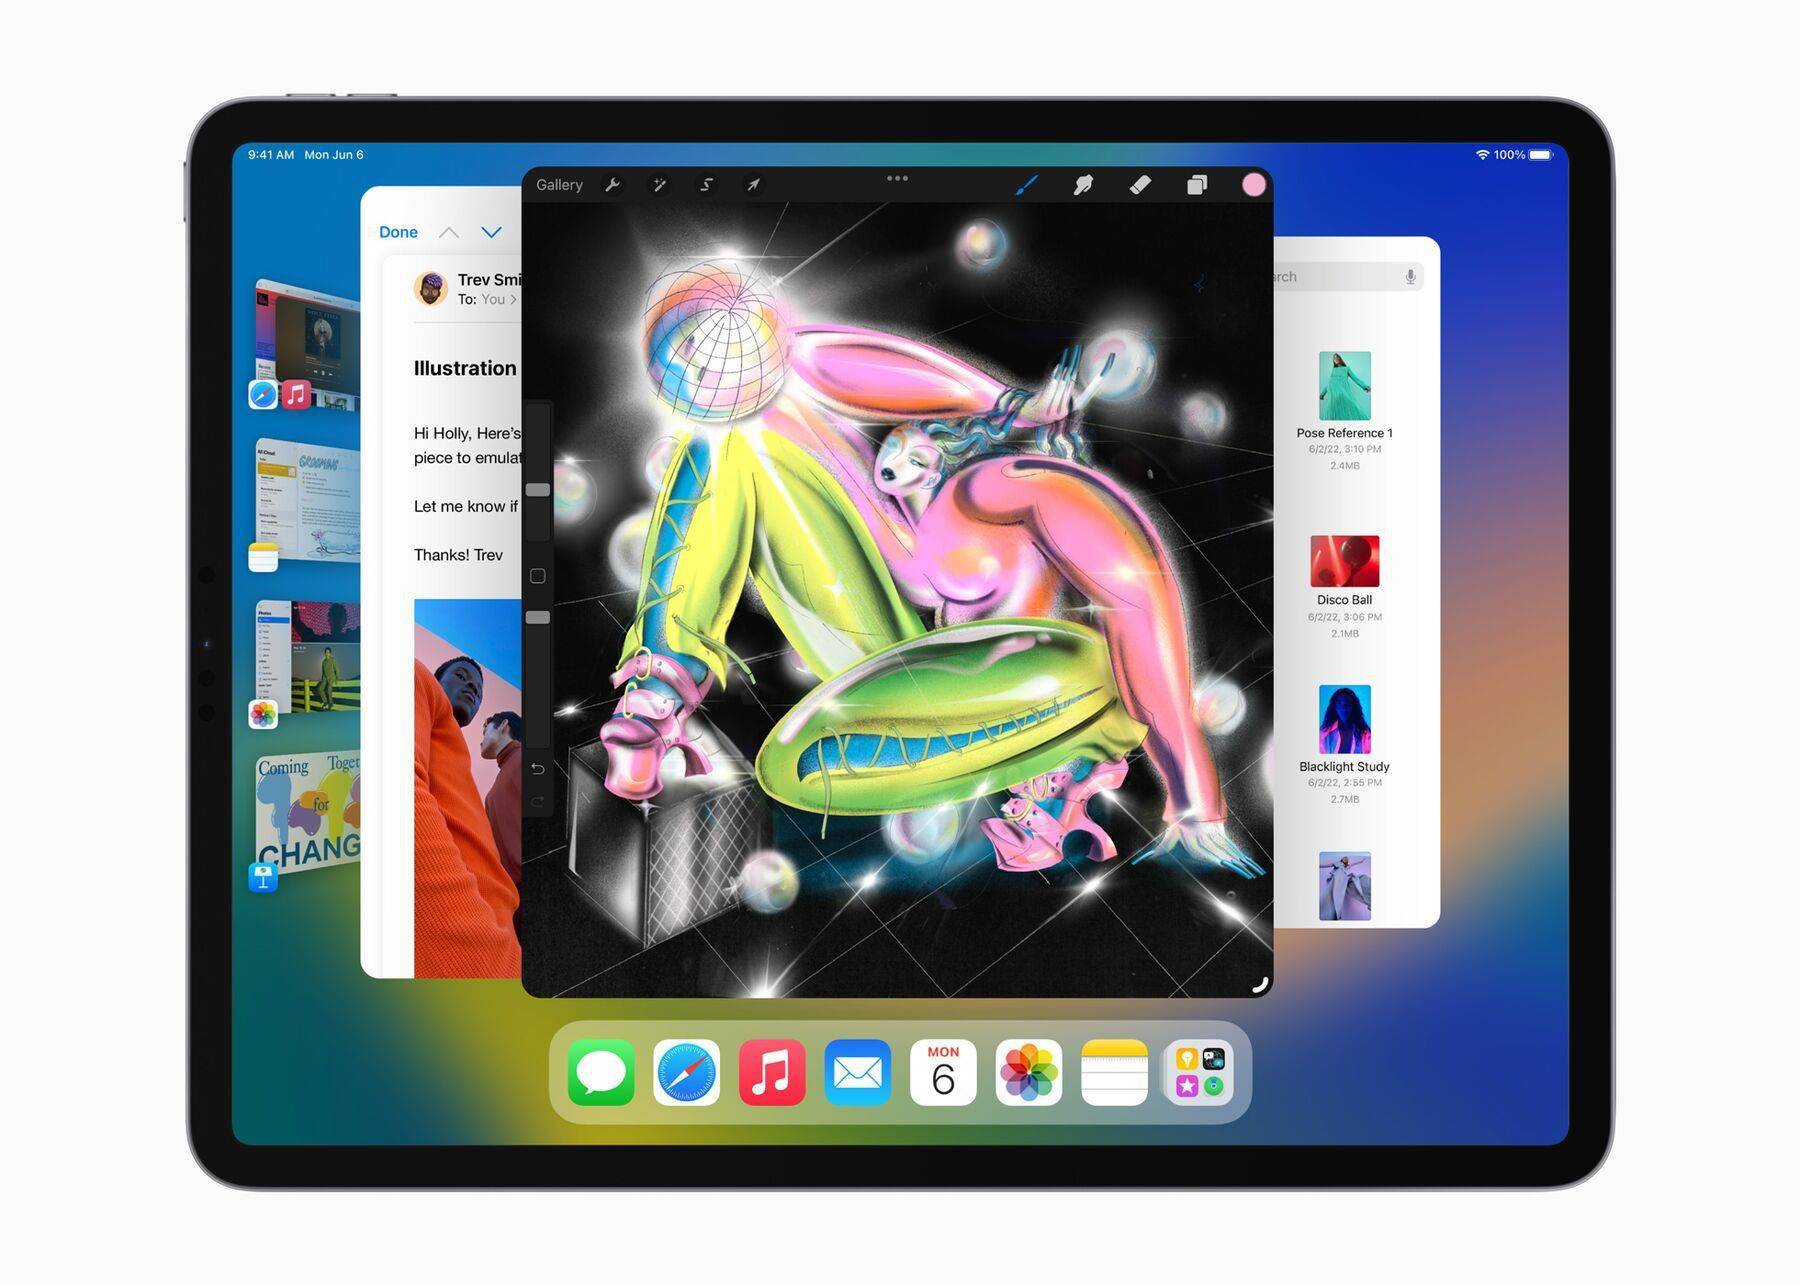 古尔曼称新款苹果iPad Air/Pro有望开启 iPad 新时代